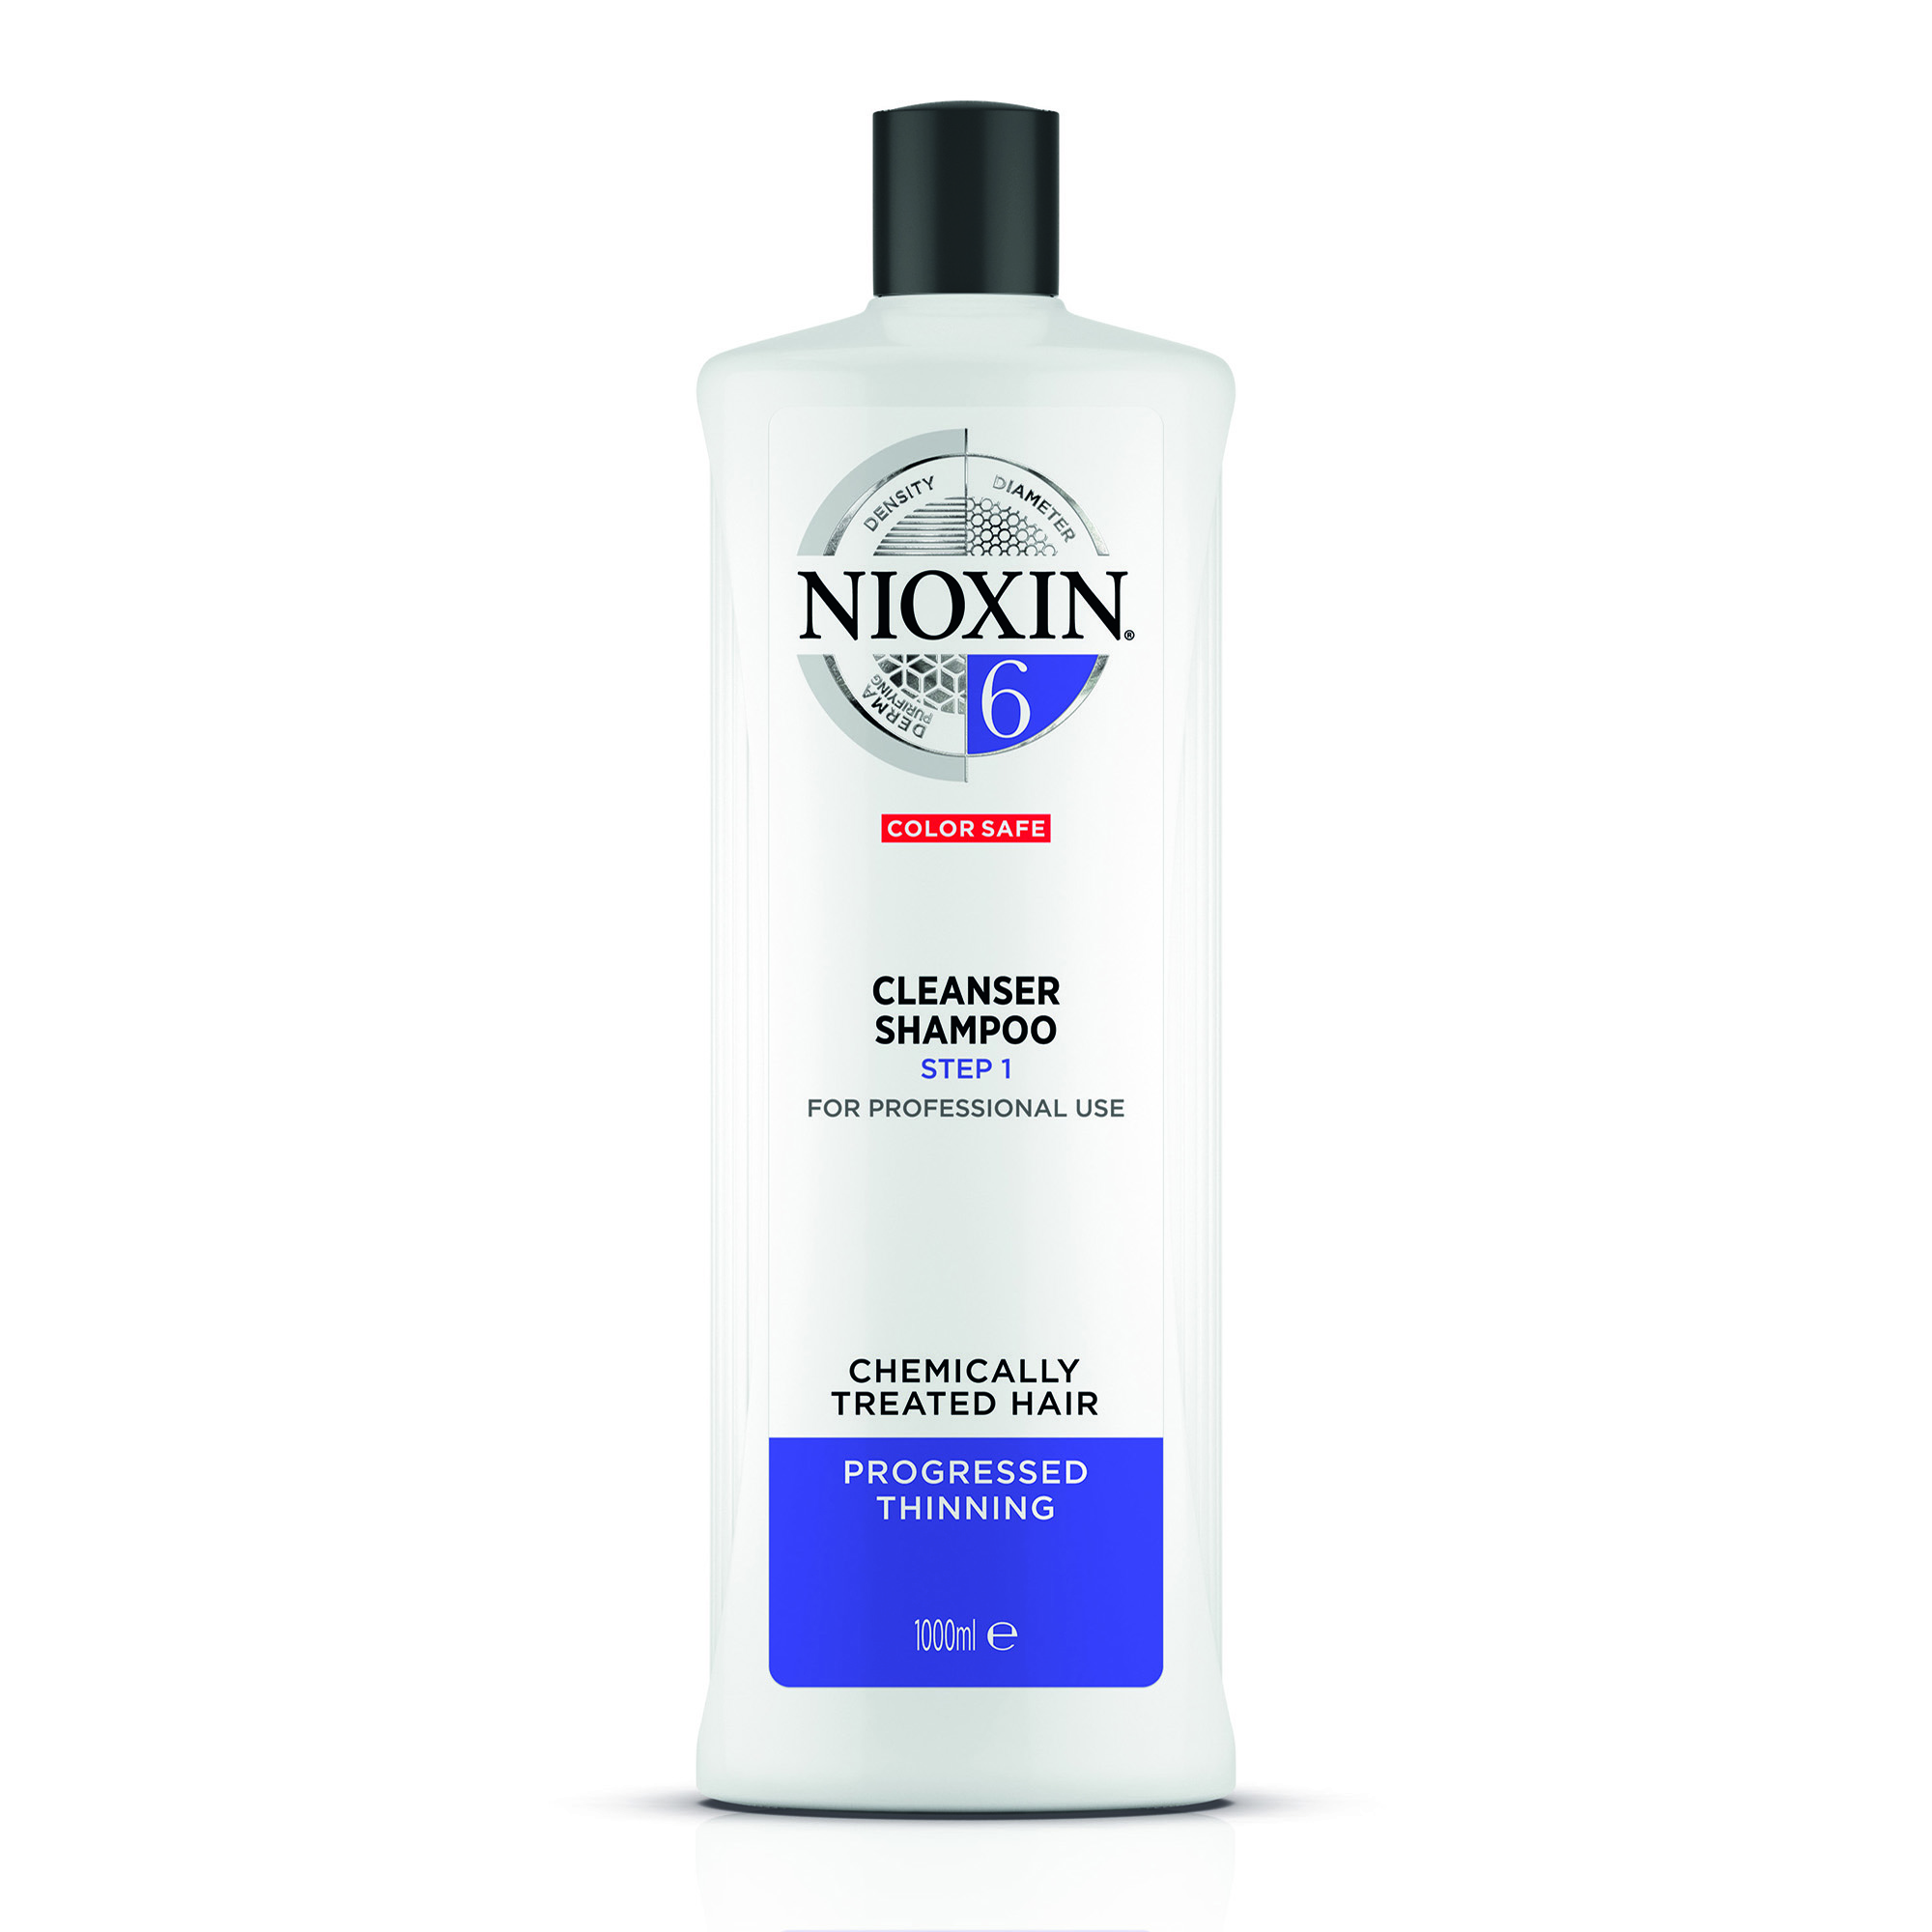 NIOXIN Шампунь очищающий для заметно редеющих волос, Система 6, 1000 мл очищающий шампунь система 2 81630627 7981 7741 4470 300 мл